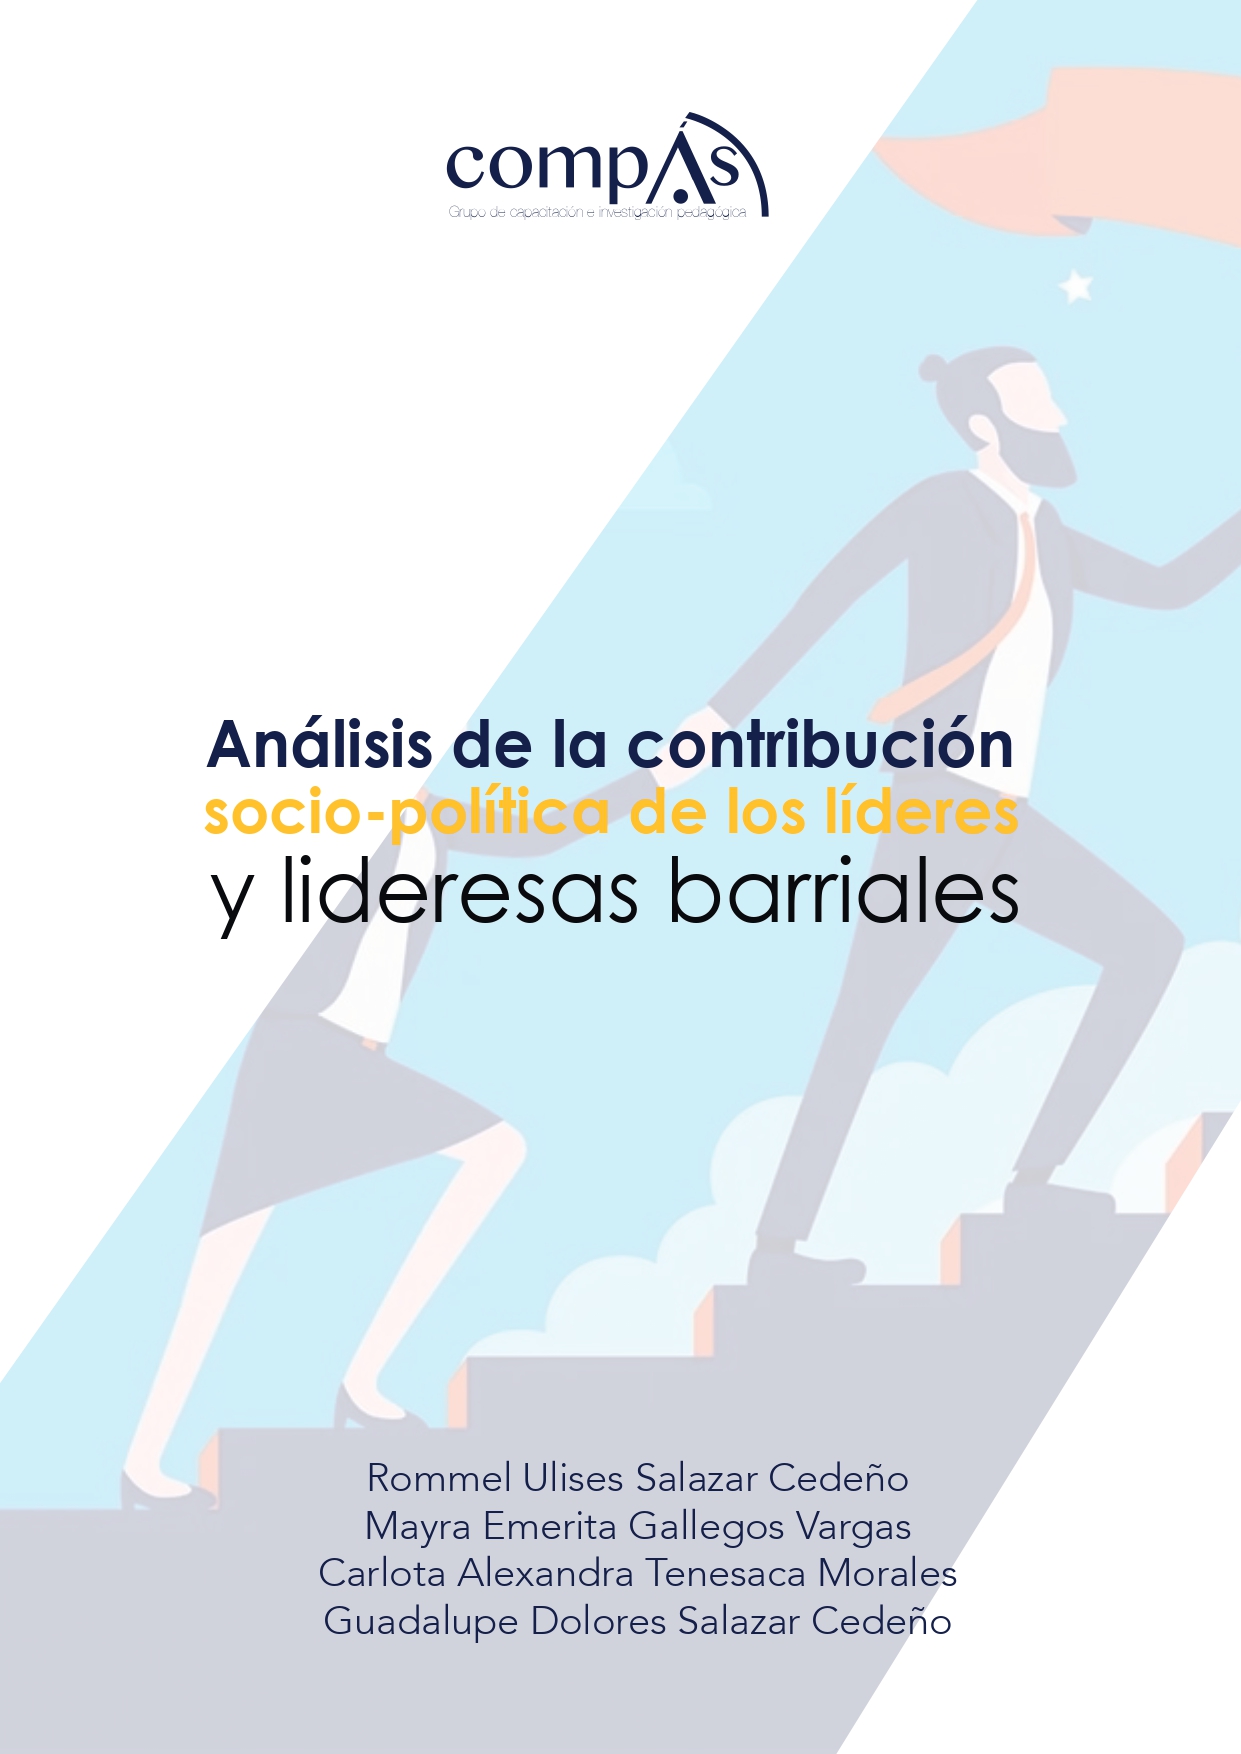 Imagen de portada del libro Análisis de la contribución socio-políticade los líderes y lideresas barriales